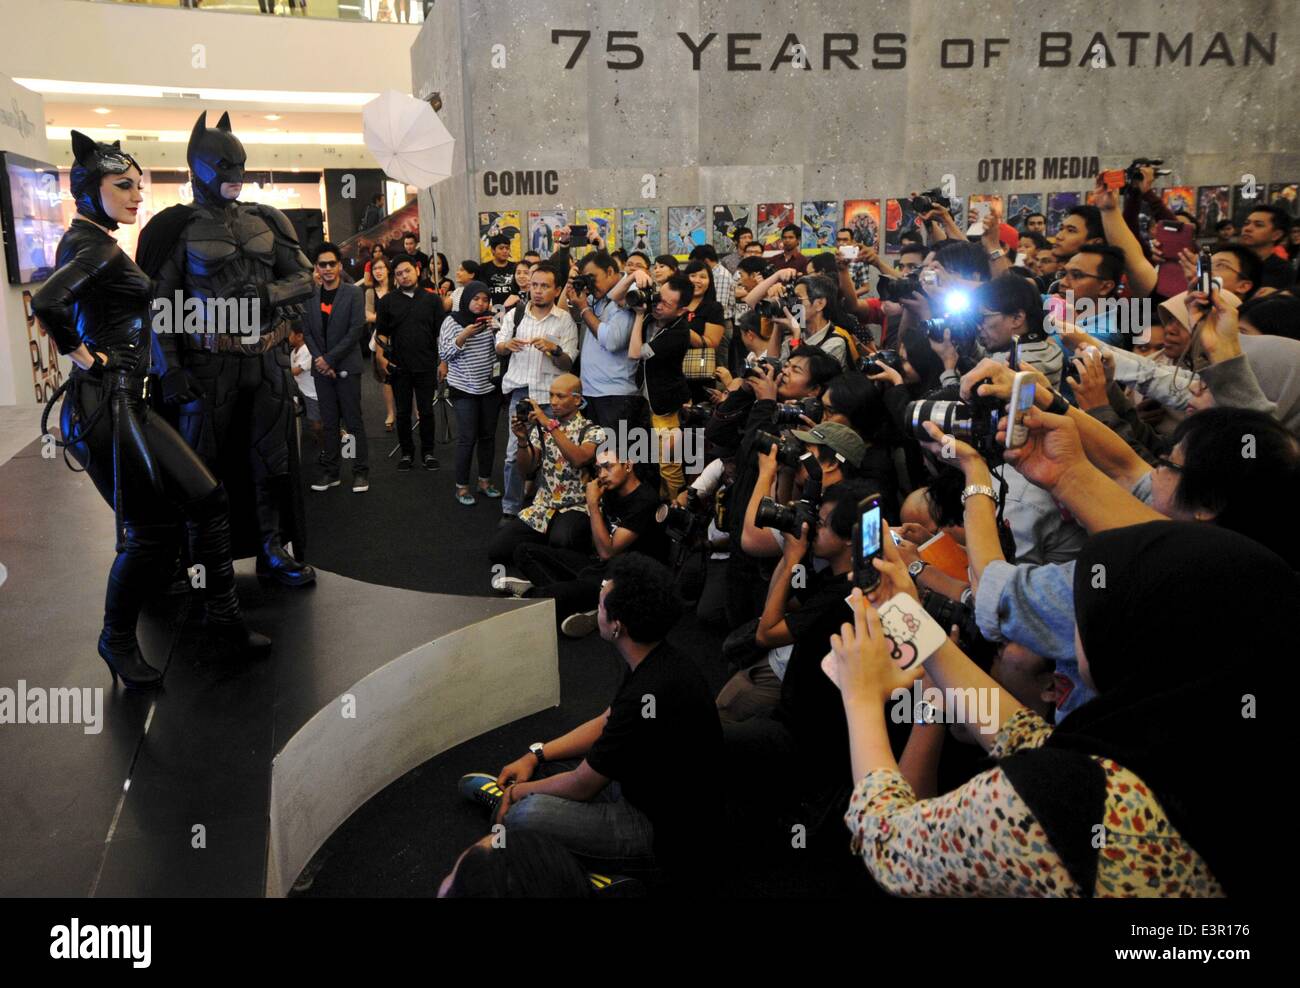 (140627)--JAKARTA, 27. Juni 2014 (Xinhua)--Menschen Fotografieren eines Mannes in Kostümen der Animation Charakter von Batman in einem Shopping Center als Teil von Batman 75. Jubiläums-Ausstellung in Jakarta, Indonesien, 27. Juni 2014. (Xinhua/Agung Kuncahya B.) Stockfoto